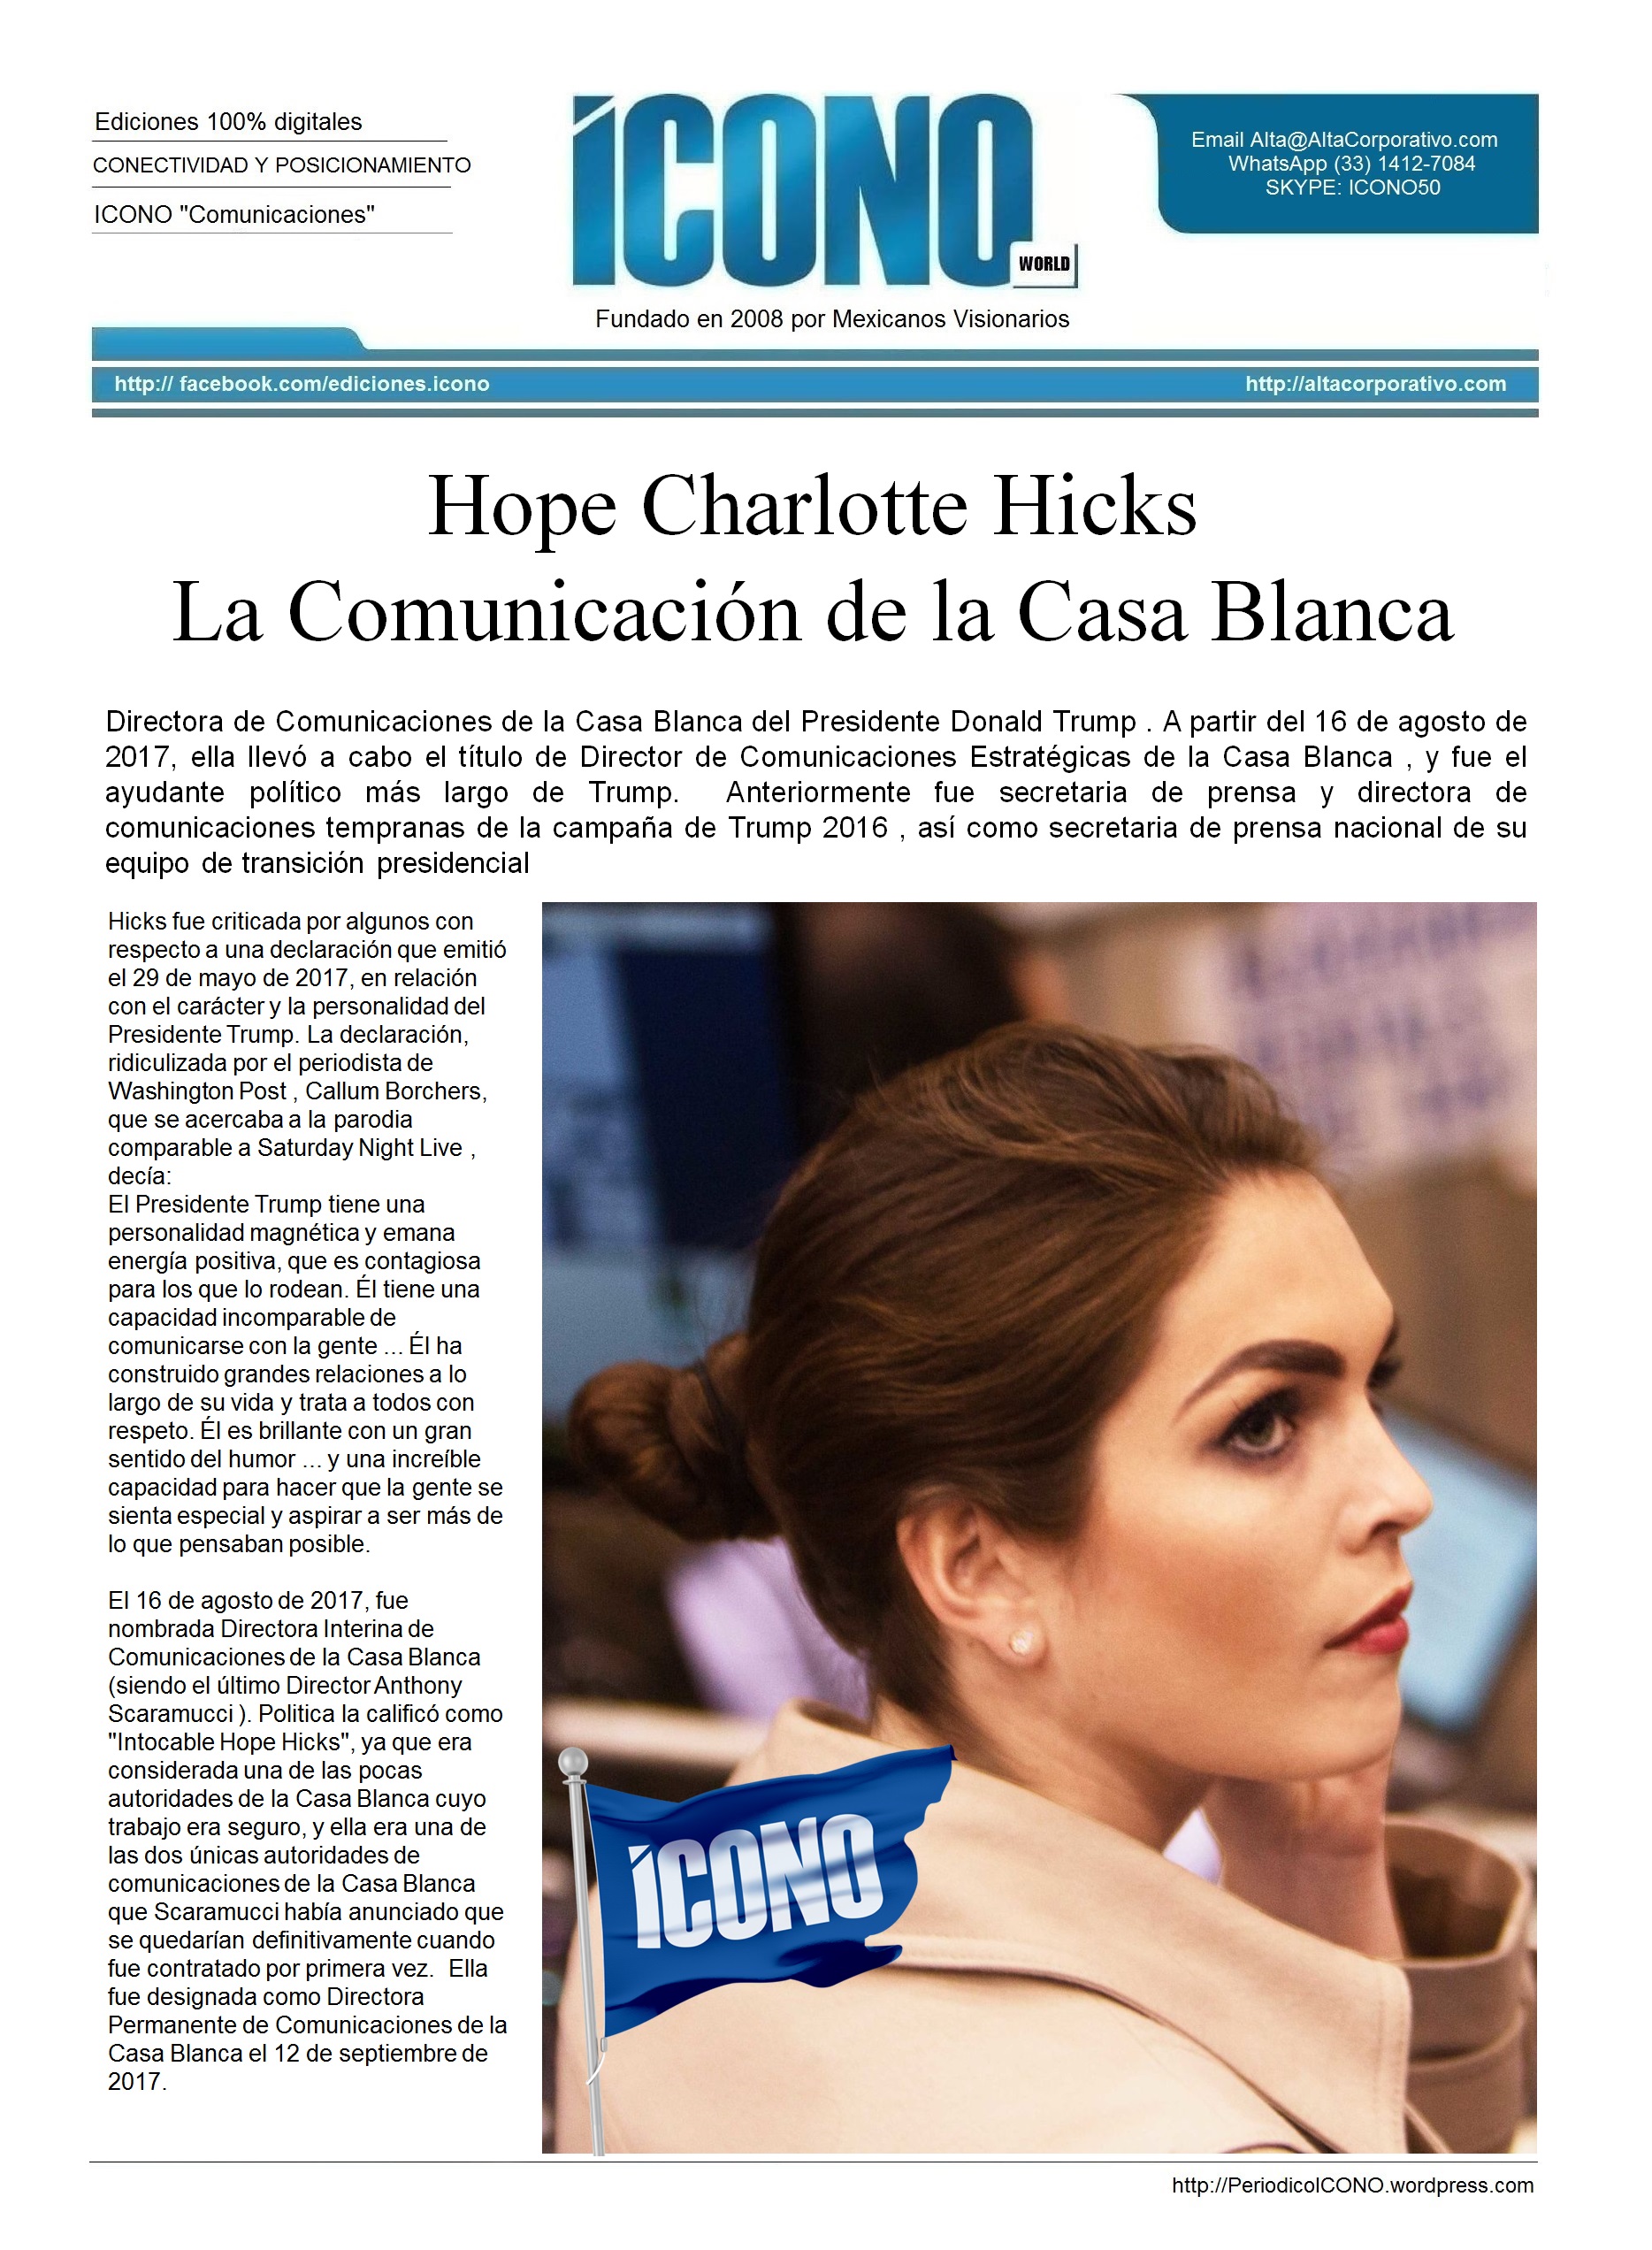 Hope Charlotte Hicks La Comunicación de la Casa Blanca | ICONO 2017